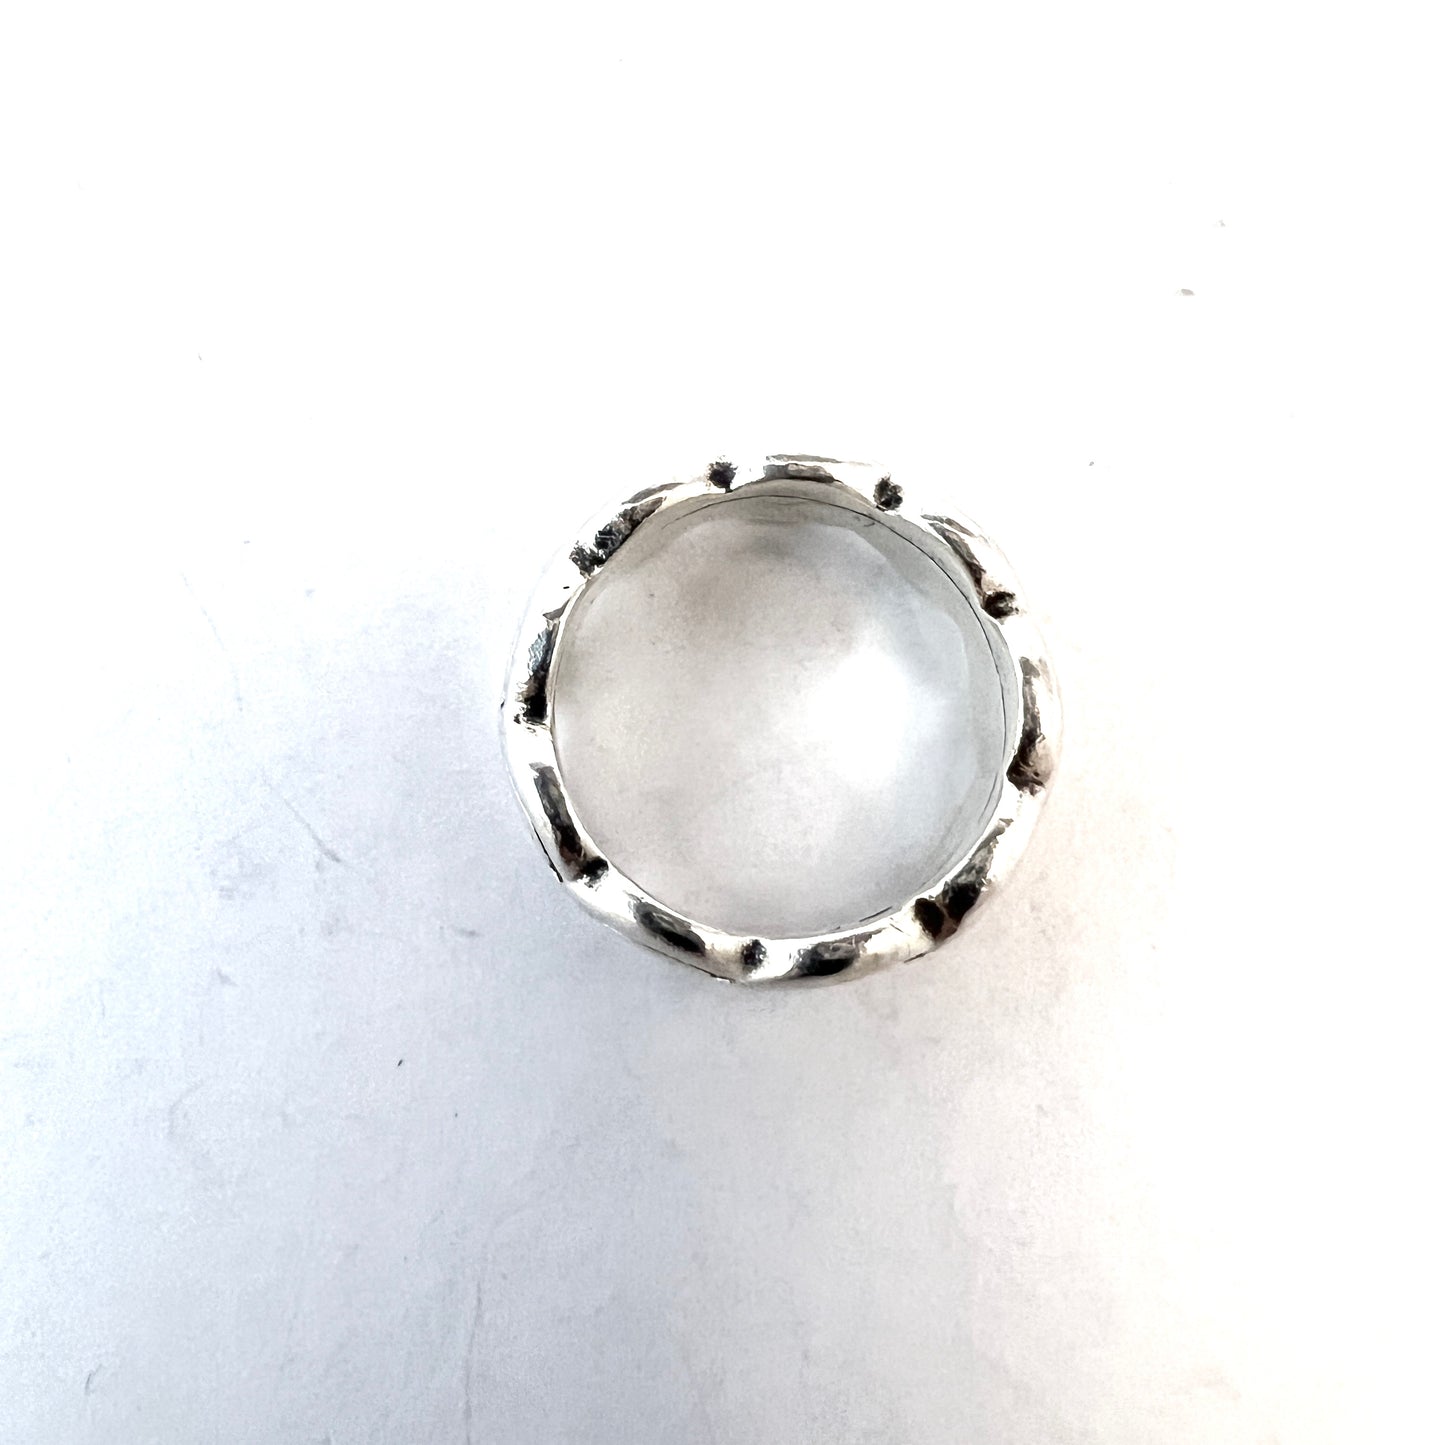 Kalevala Koru, Finland. Vintage Sterling Silver Ring.